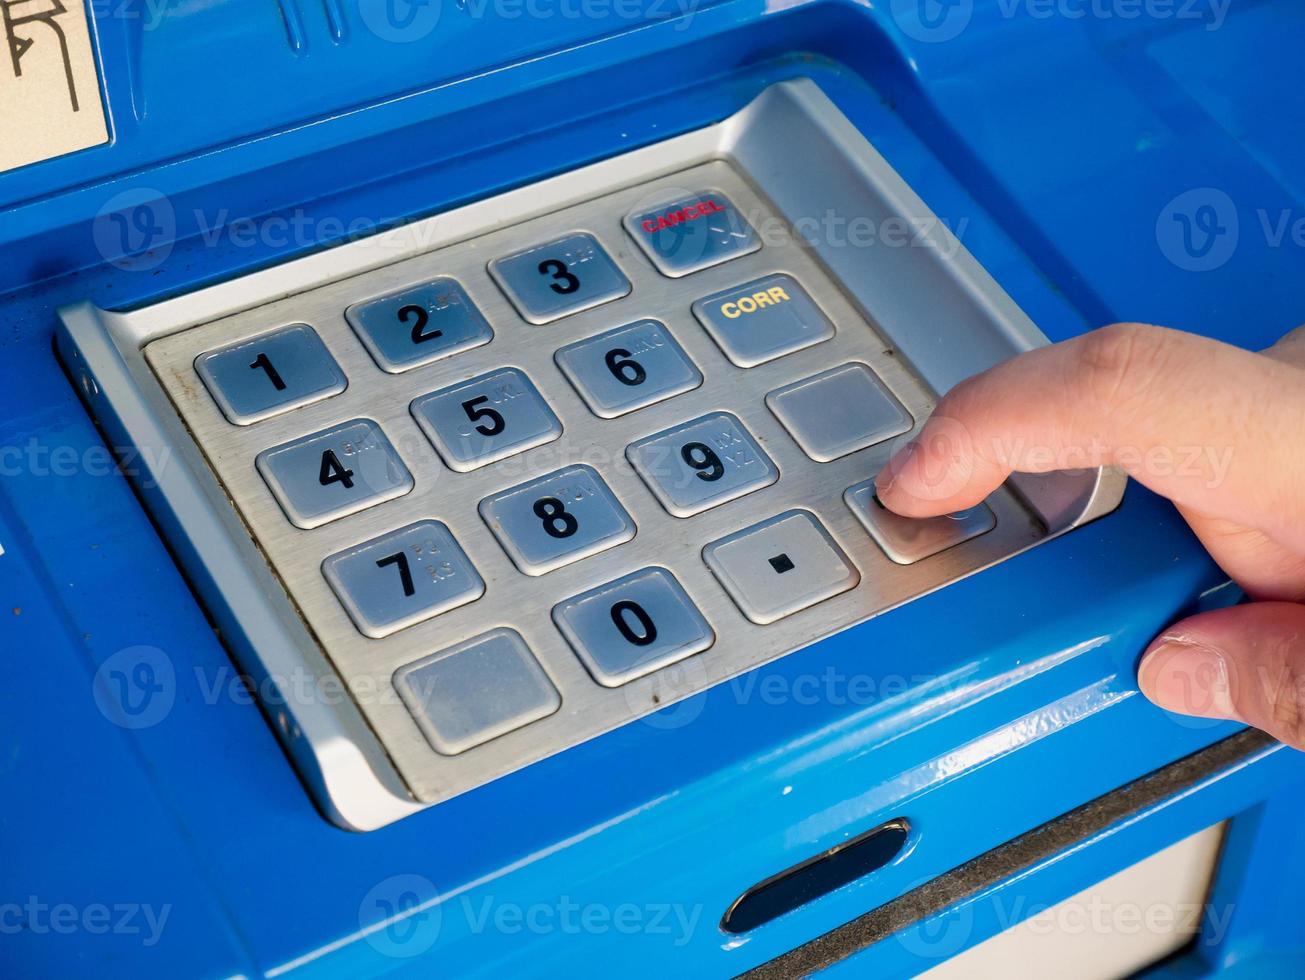 frau, die geldautomat benutzt, um geld abzuheben foto